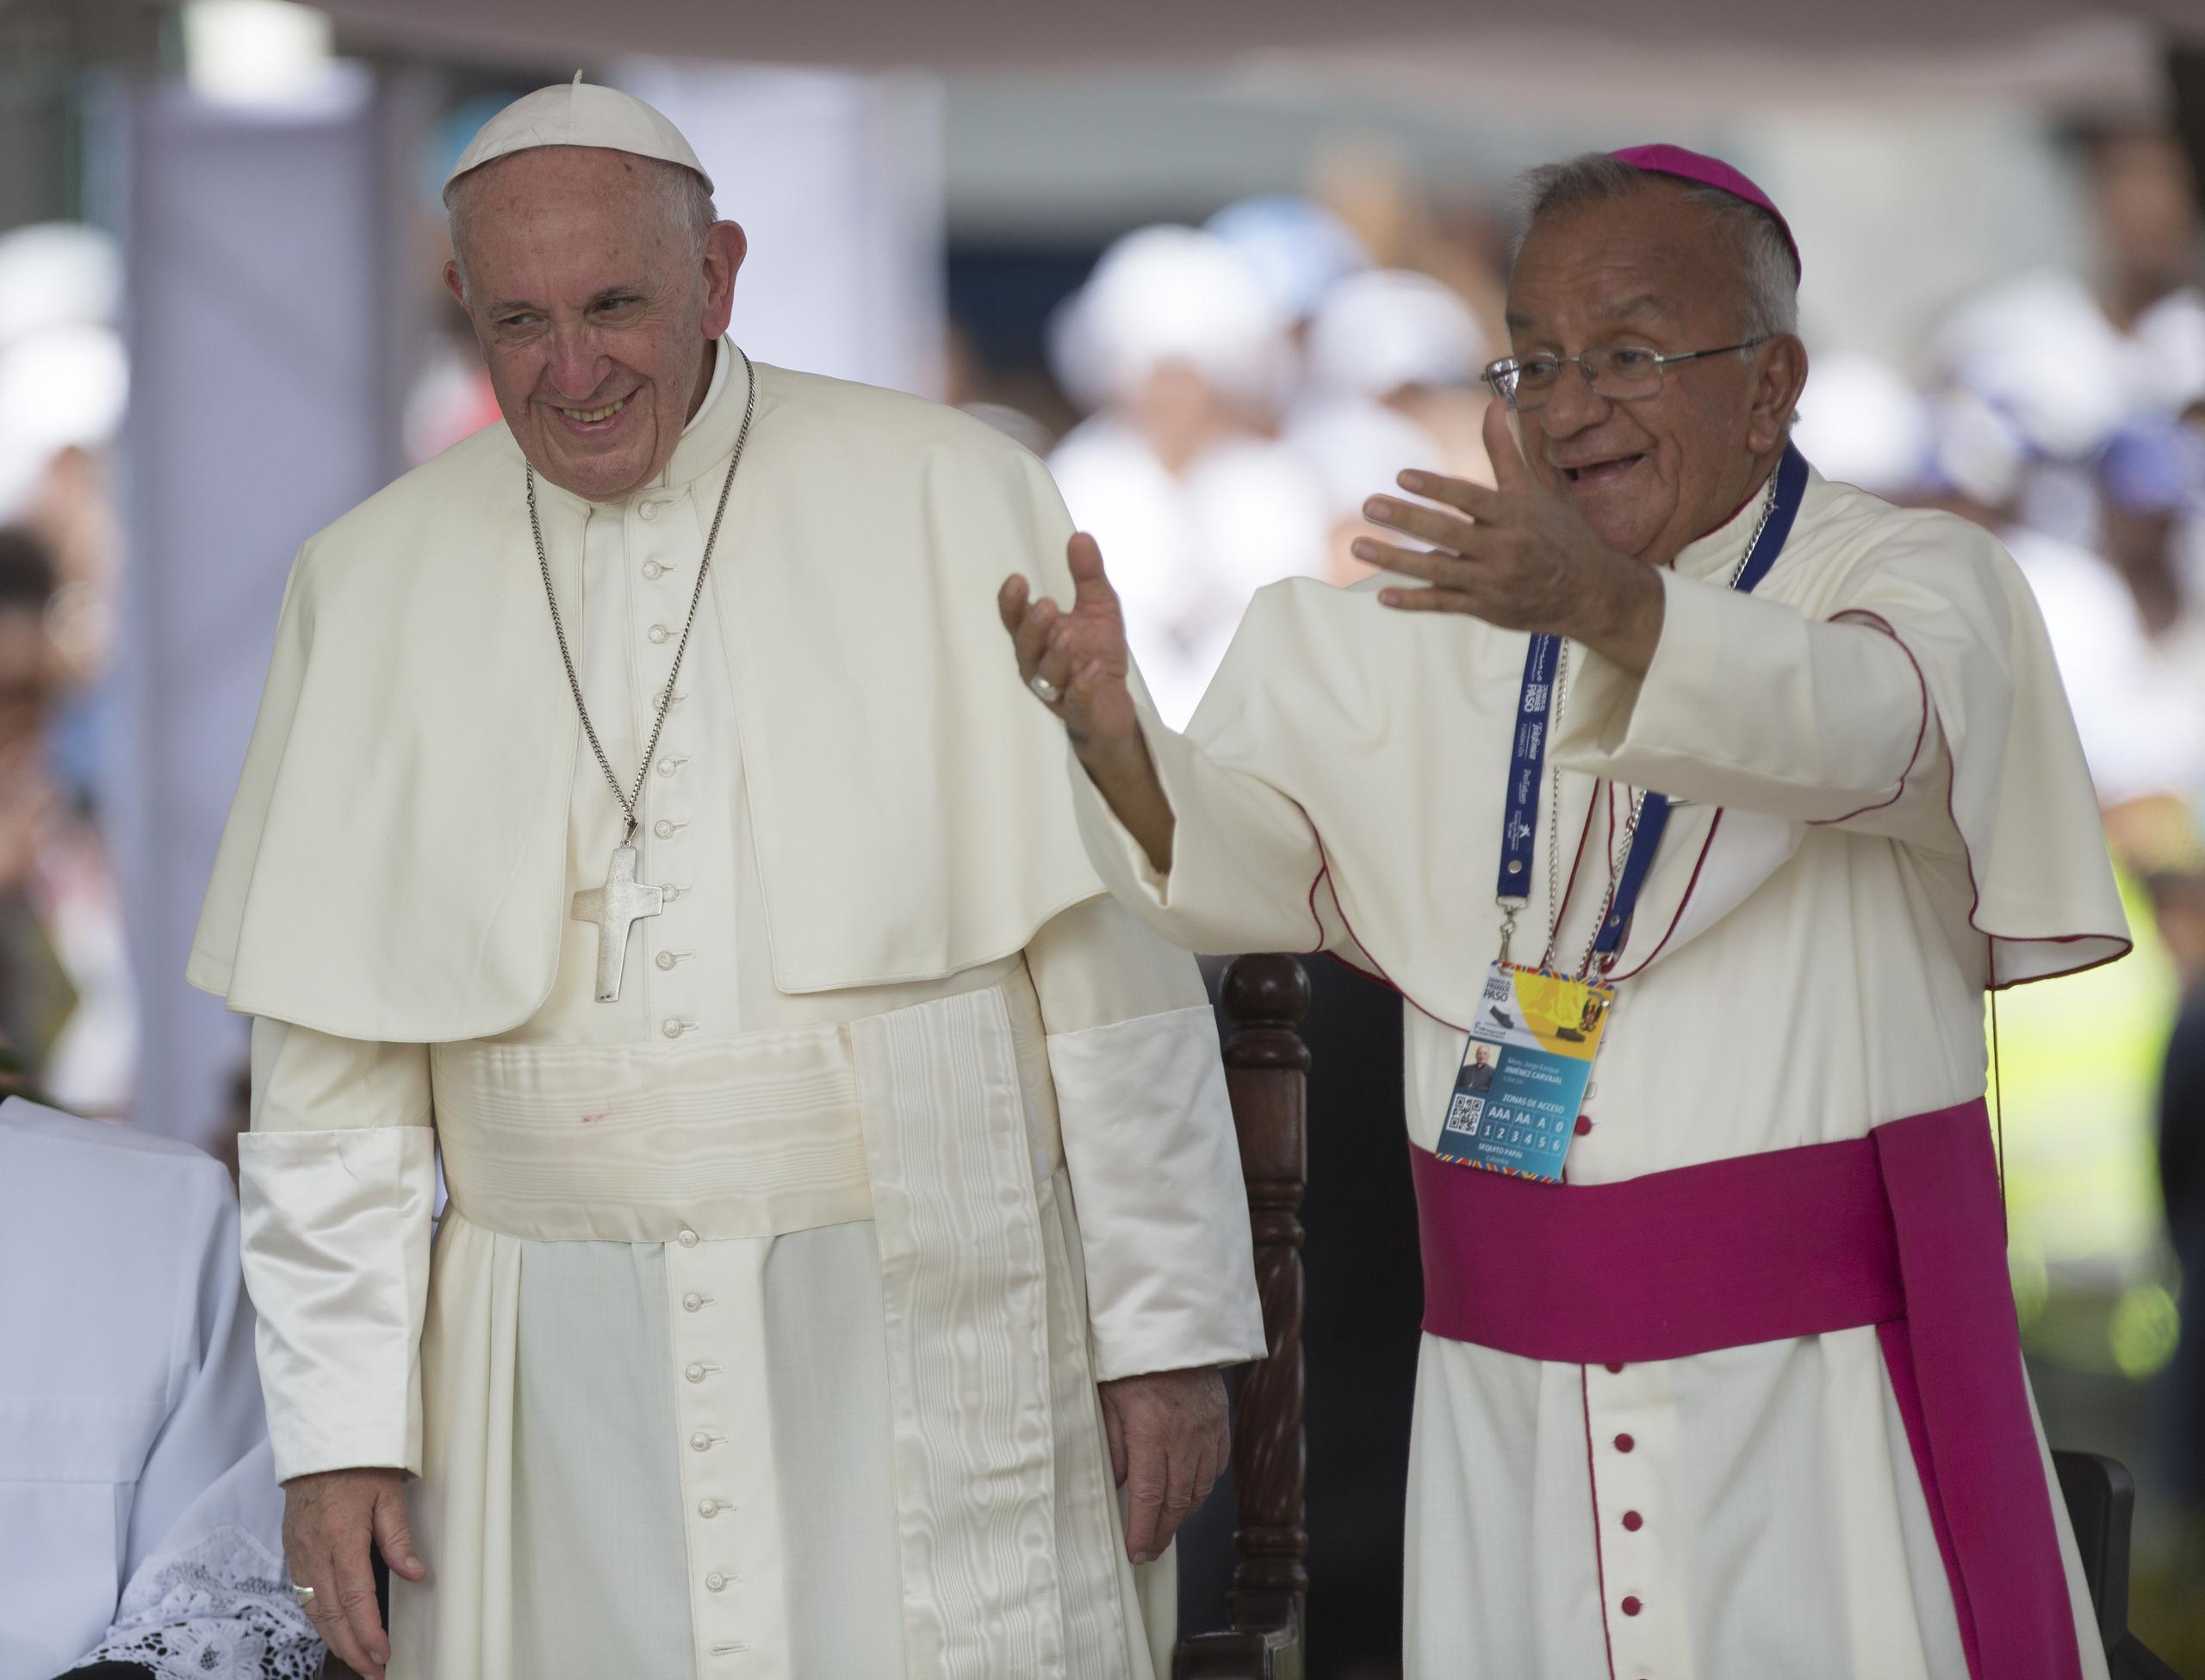 El arzobispo emérito de Cartagena de Indias, Jorge Enrique Jiménez Carvajal, a la derecha junto al papa Francisco, descartó que los nombramientos respondan a una voluntad de Francisco de dejar el papado.